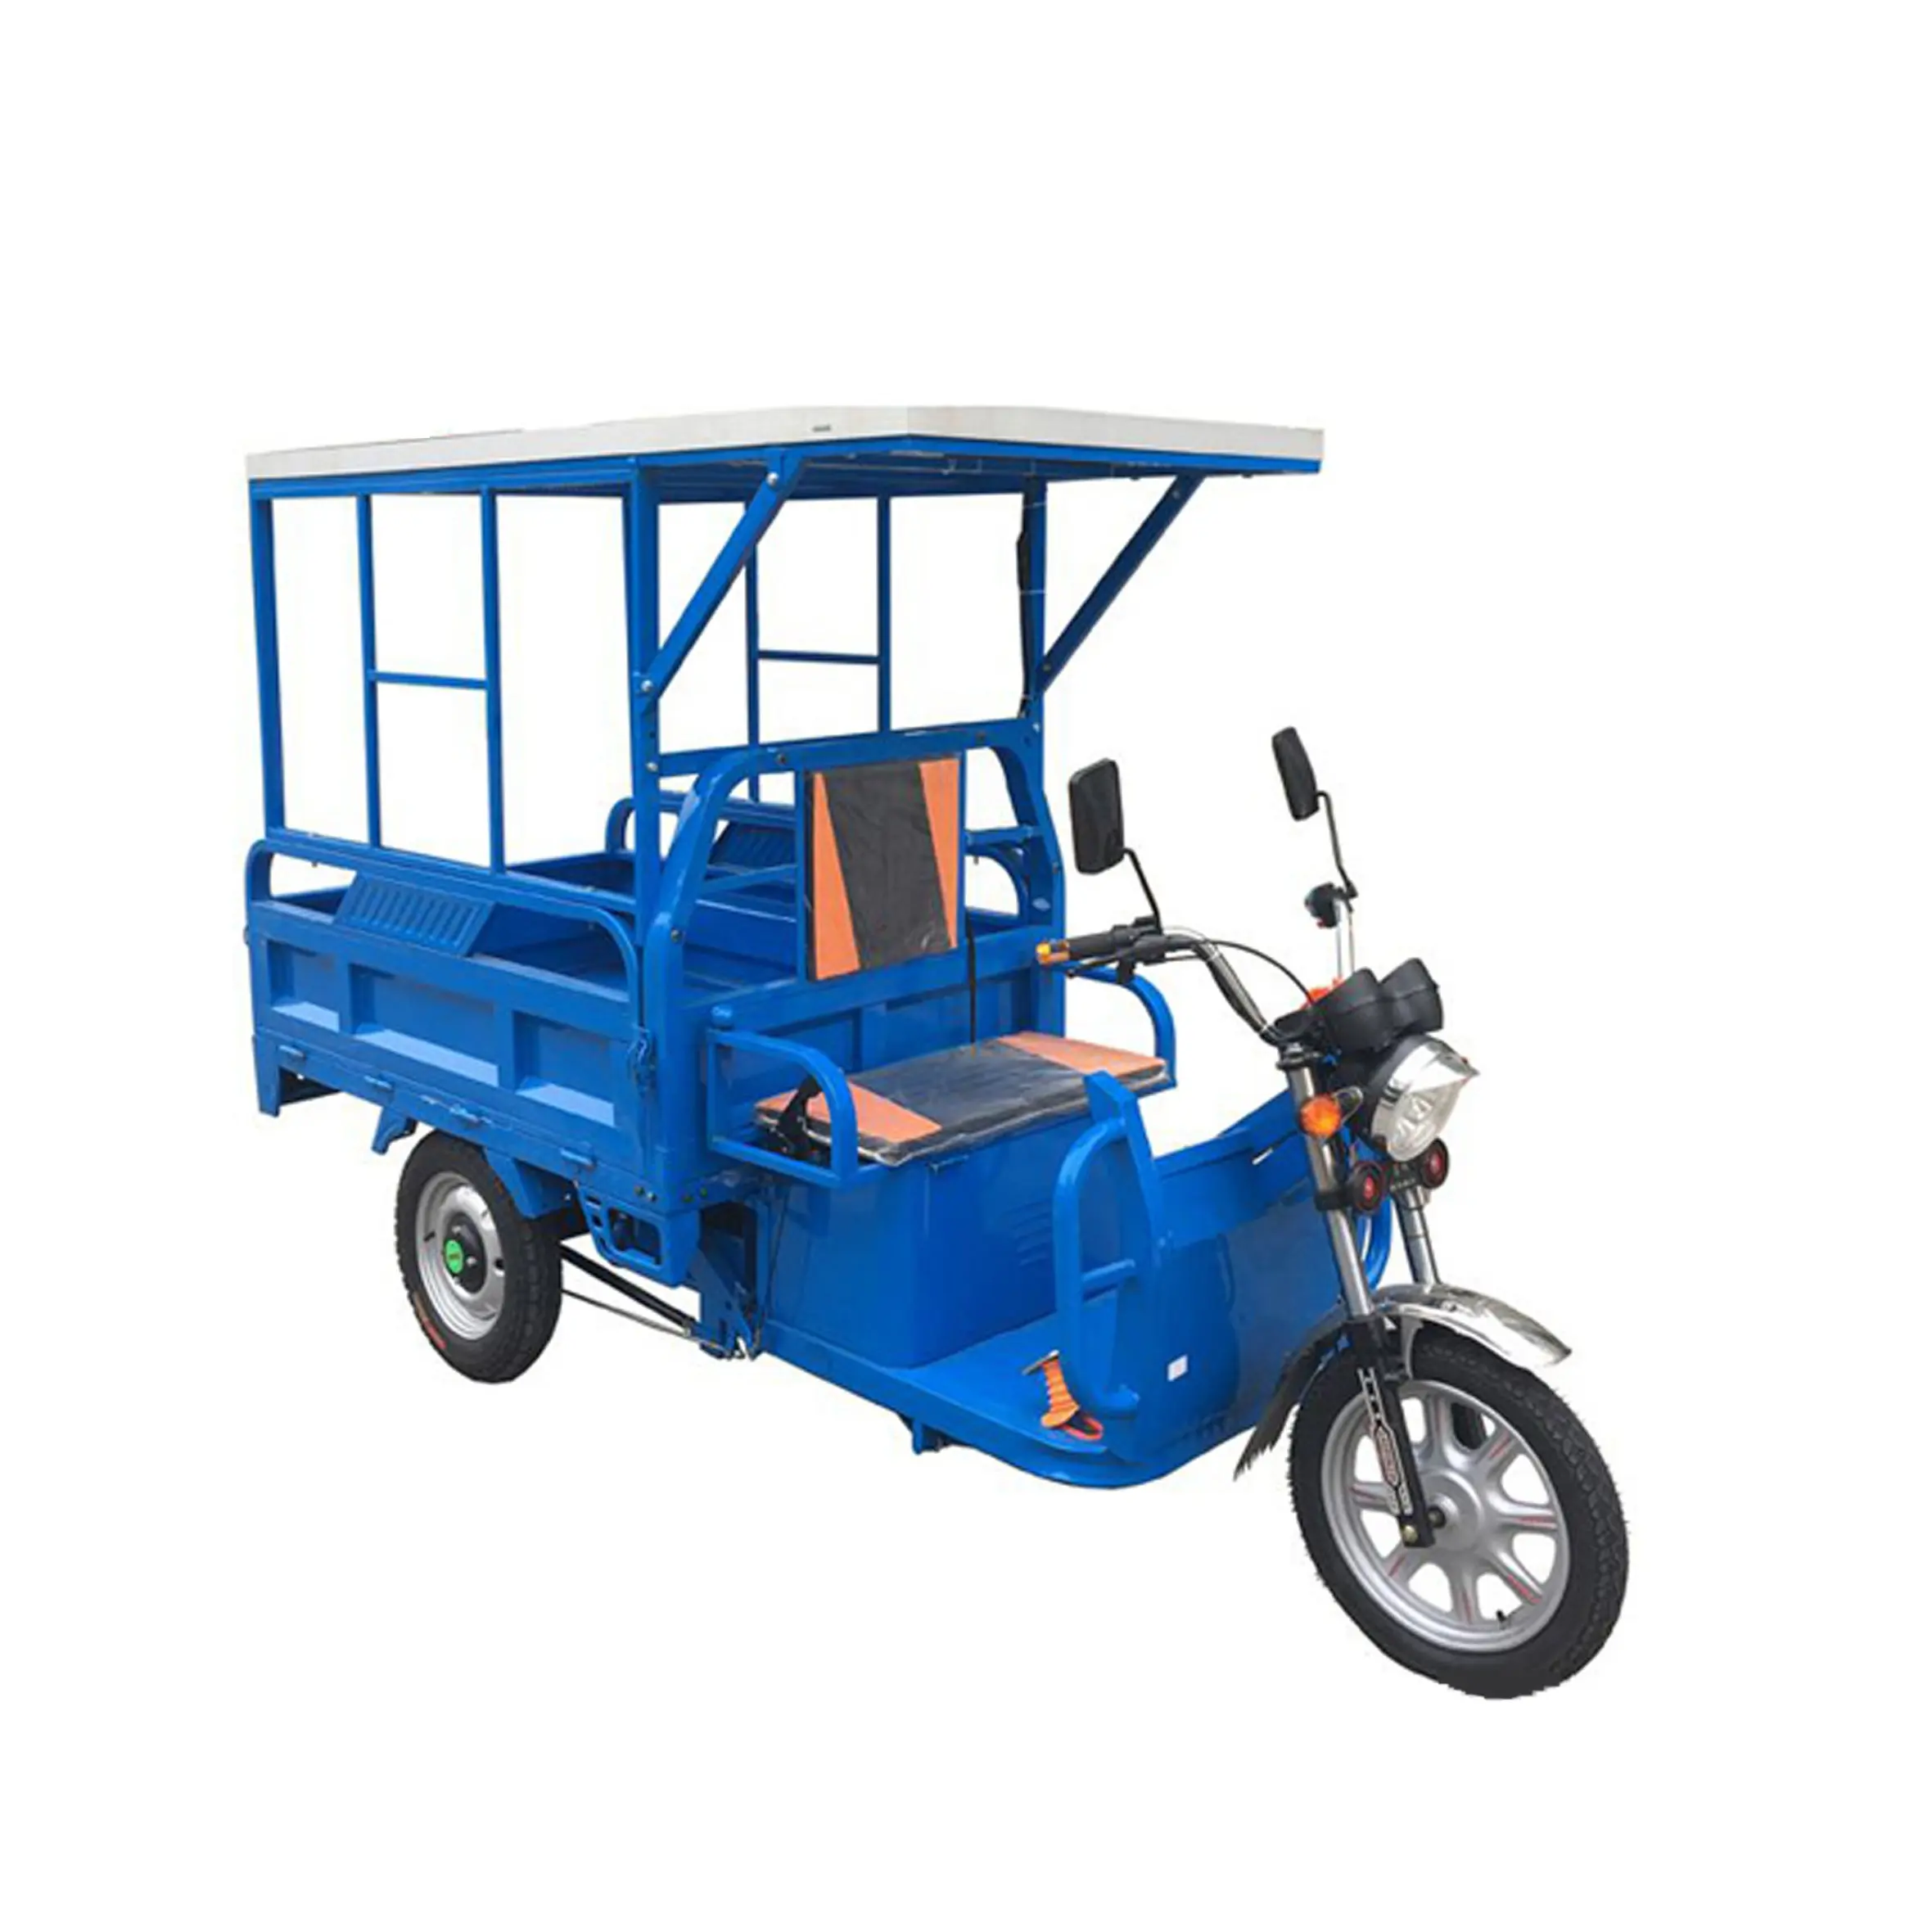 กวางโจวสินค้าใช้สามล้อรถตุ๊กตุ๊กแบตเตอรี่เสริมรถจักรยานยนต์ไฟฟ้าสกู๊ตเตอร์สามล้อสำหรับขาย